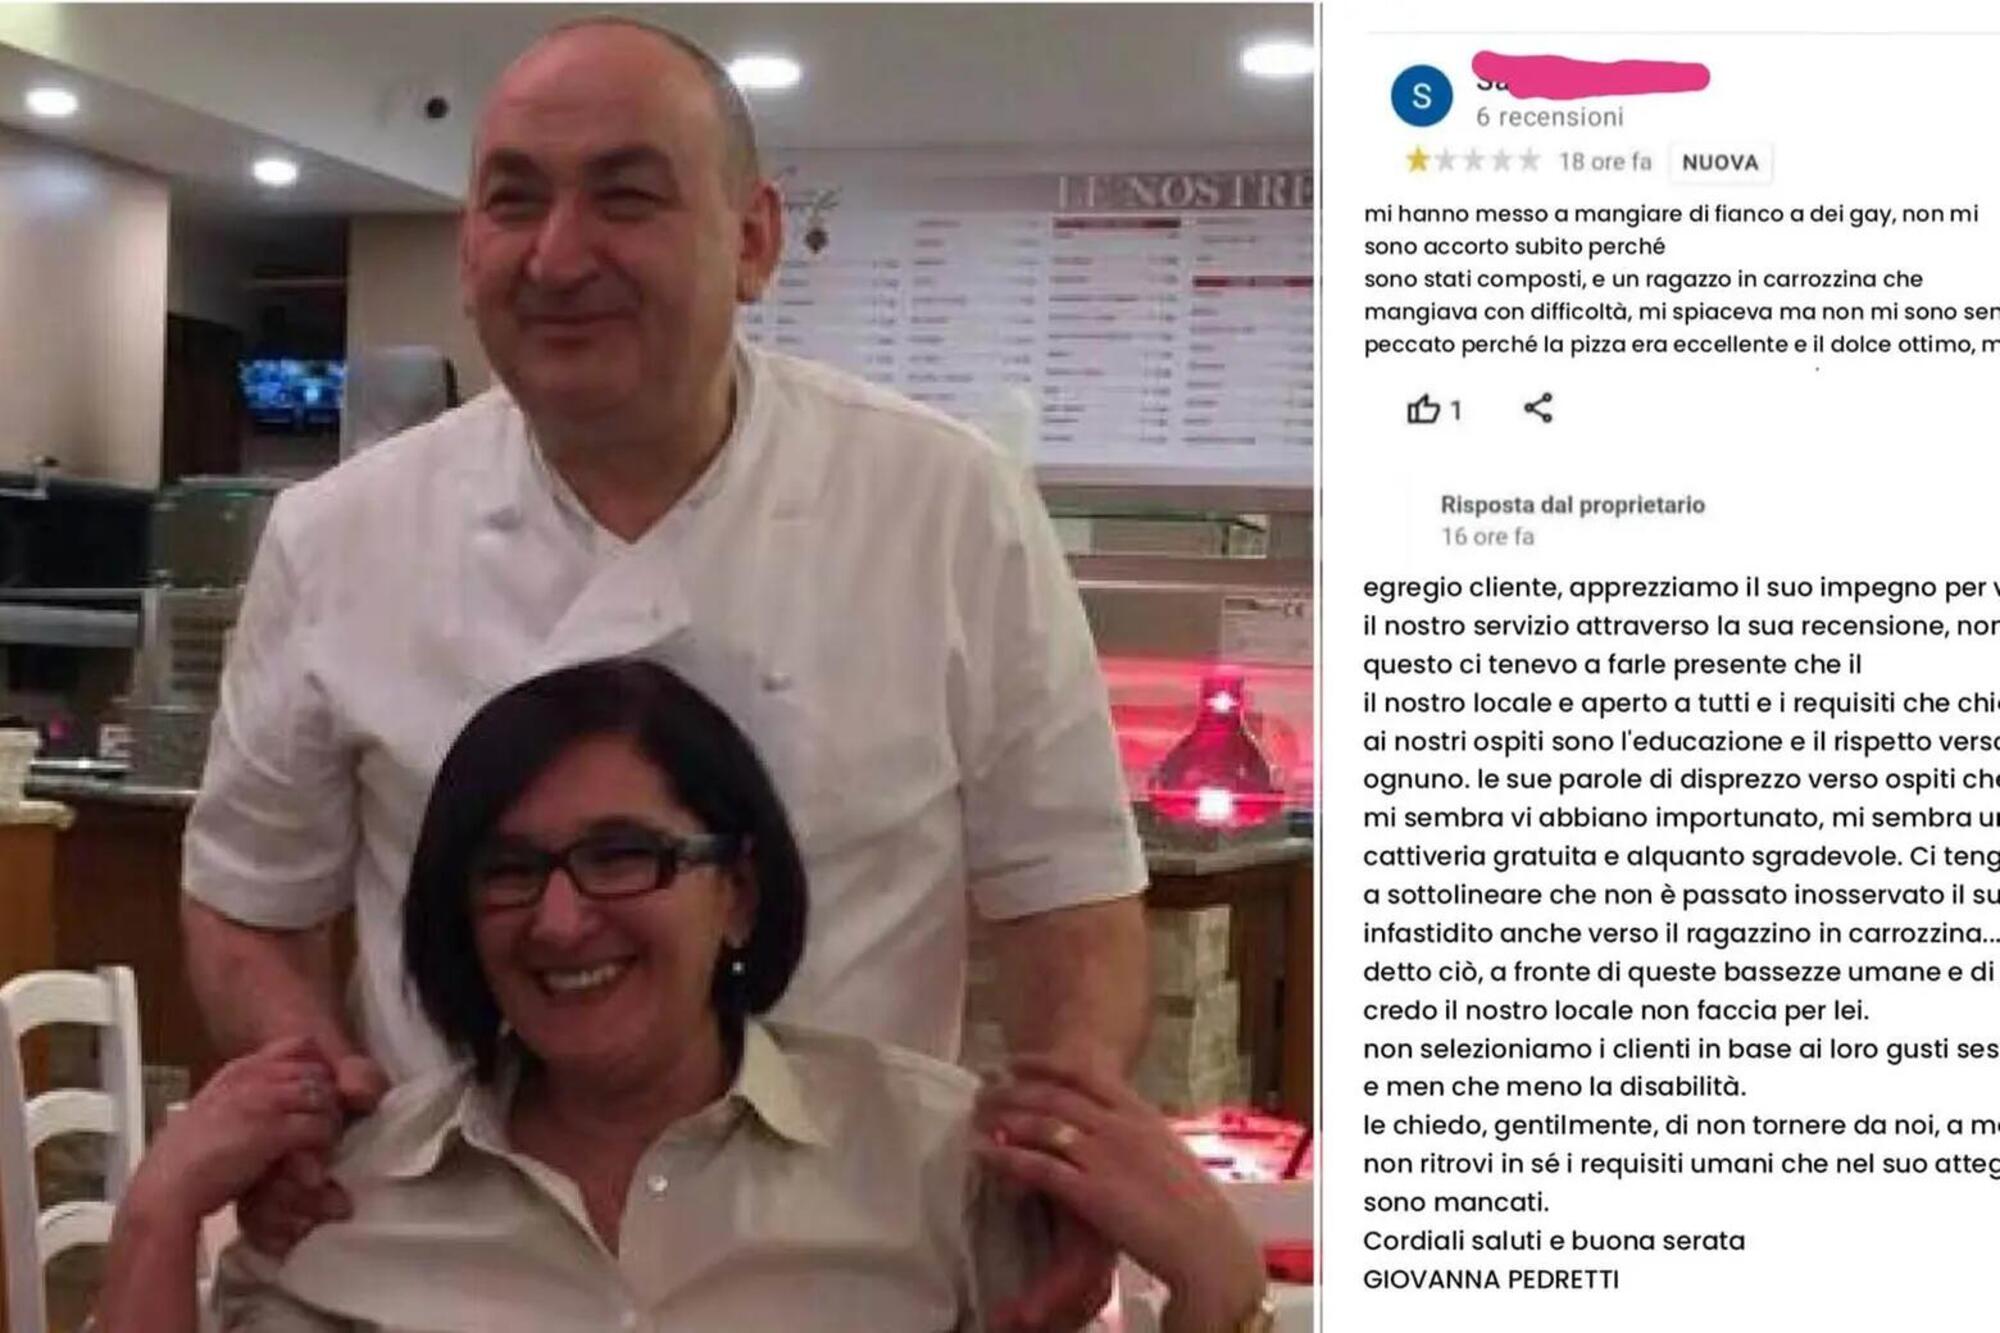 La ristoratrice Giovanna Pedretti e il commento incriminato